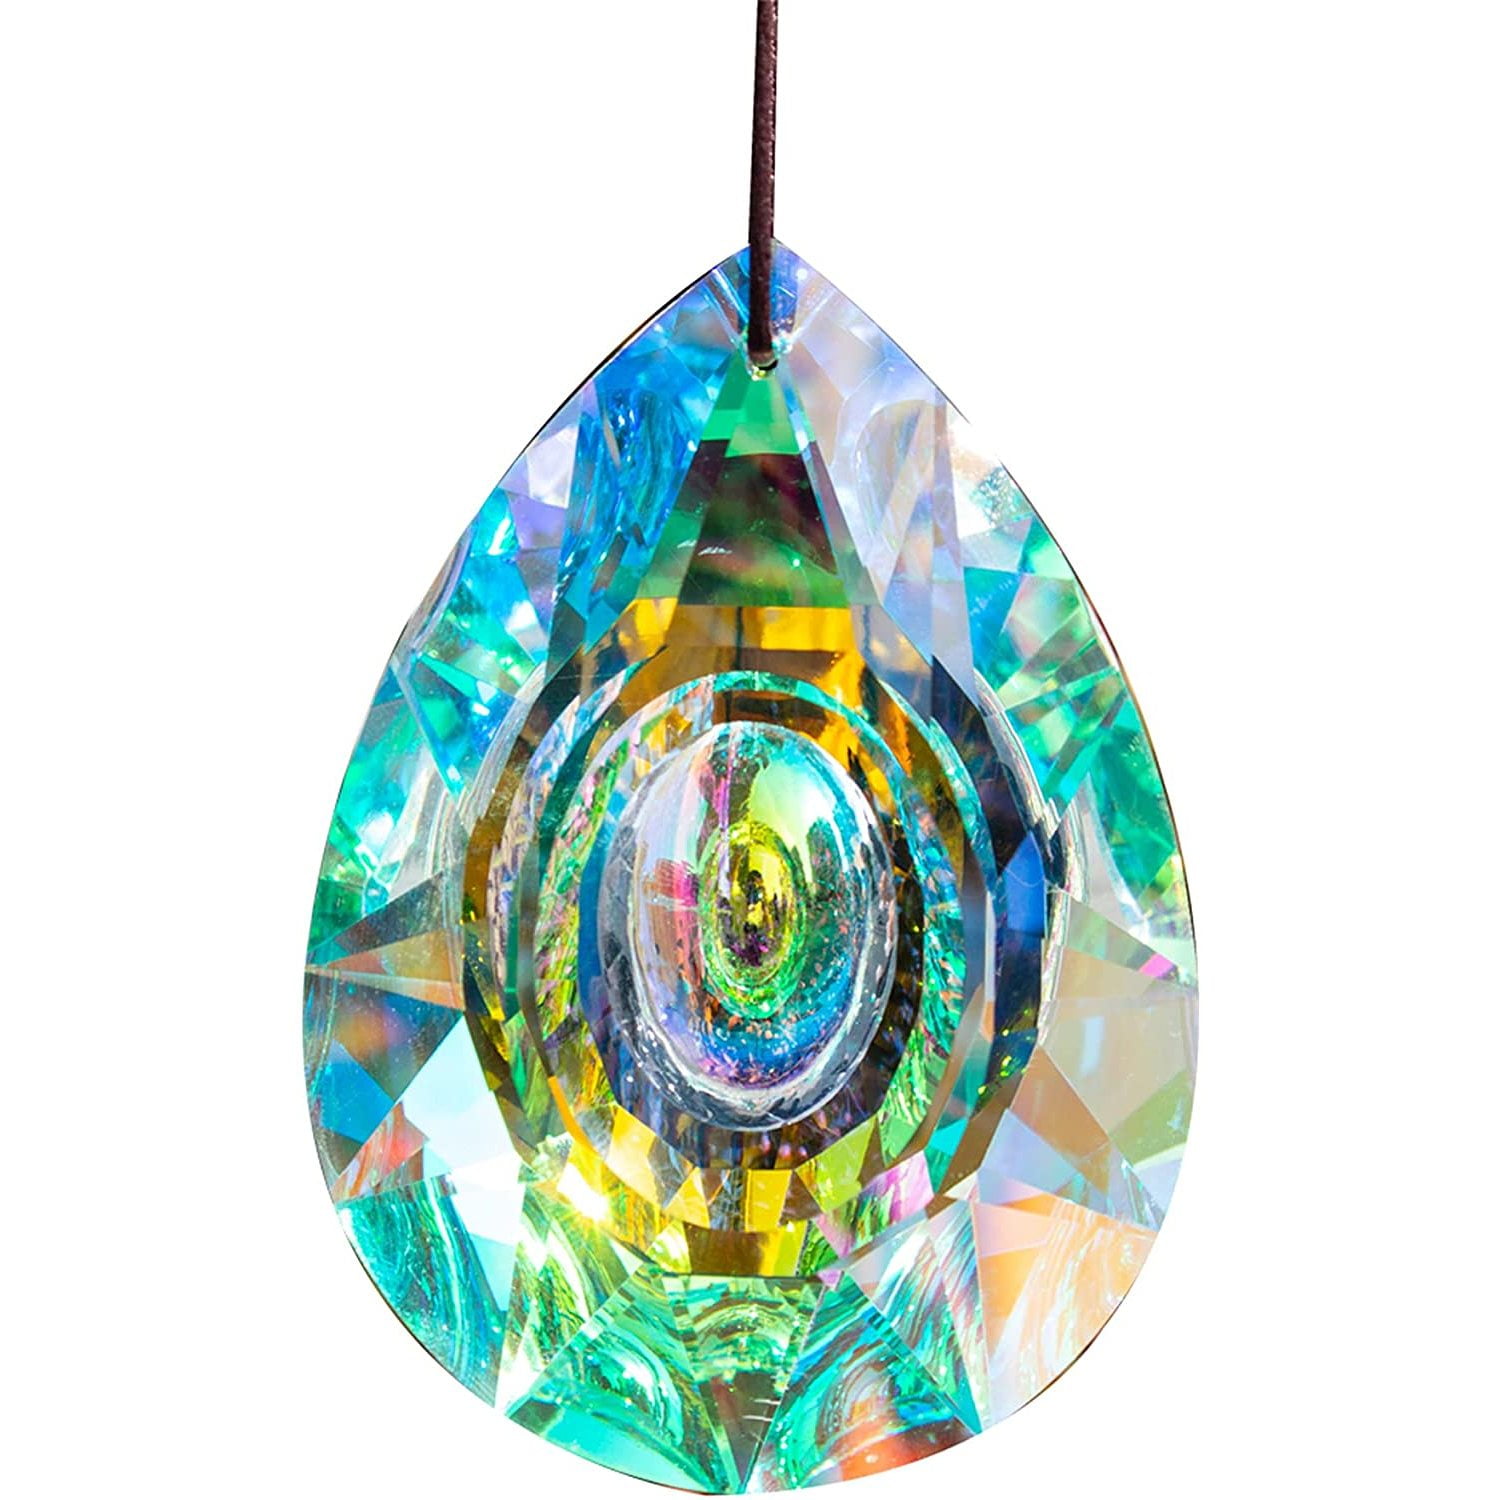 Rare Vtg PINK APPLE PRISM Crystal Chandelier Lamp Part Feng Shui Suncatcher 